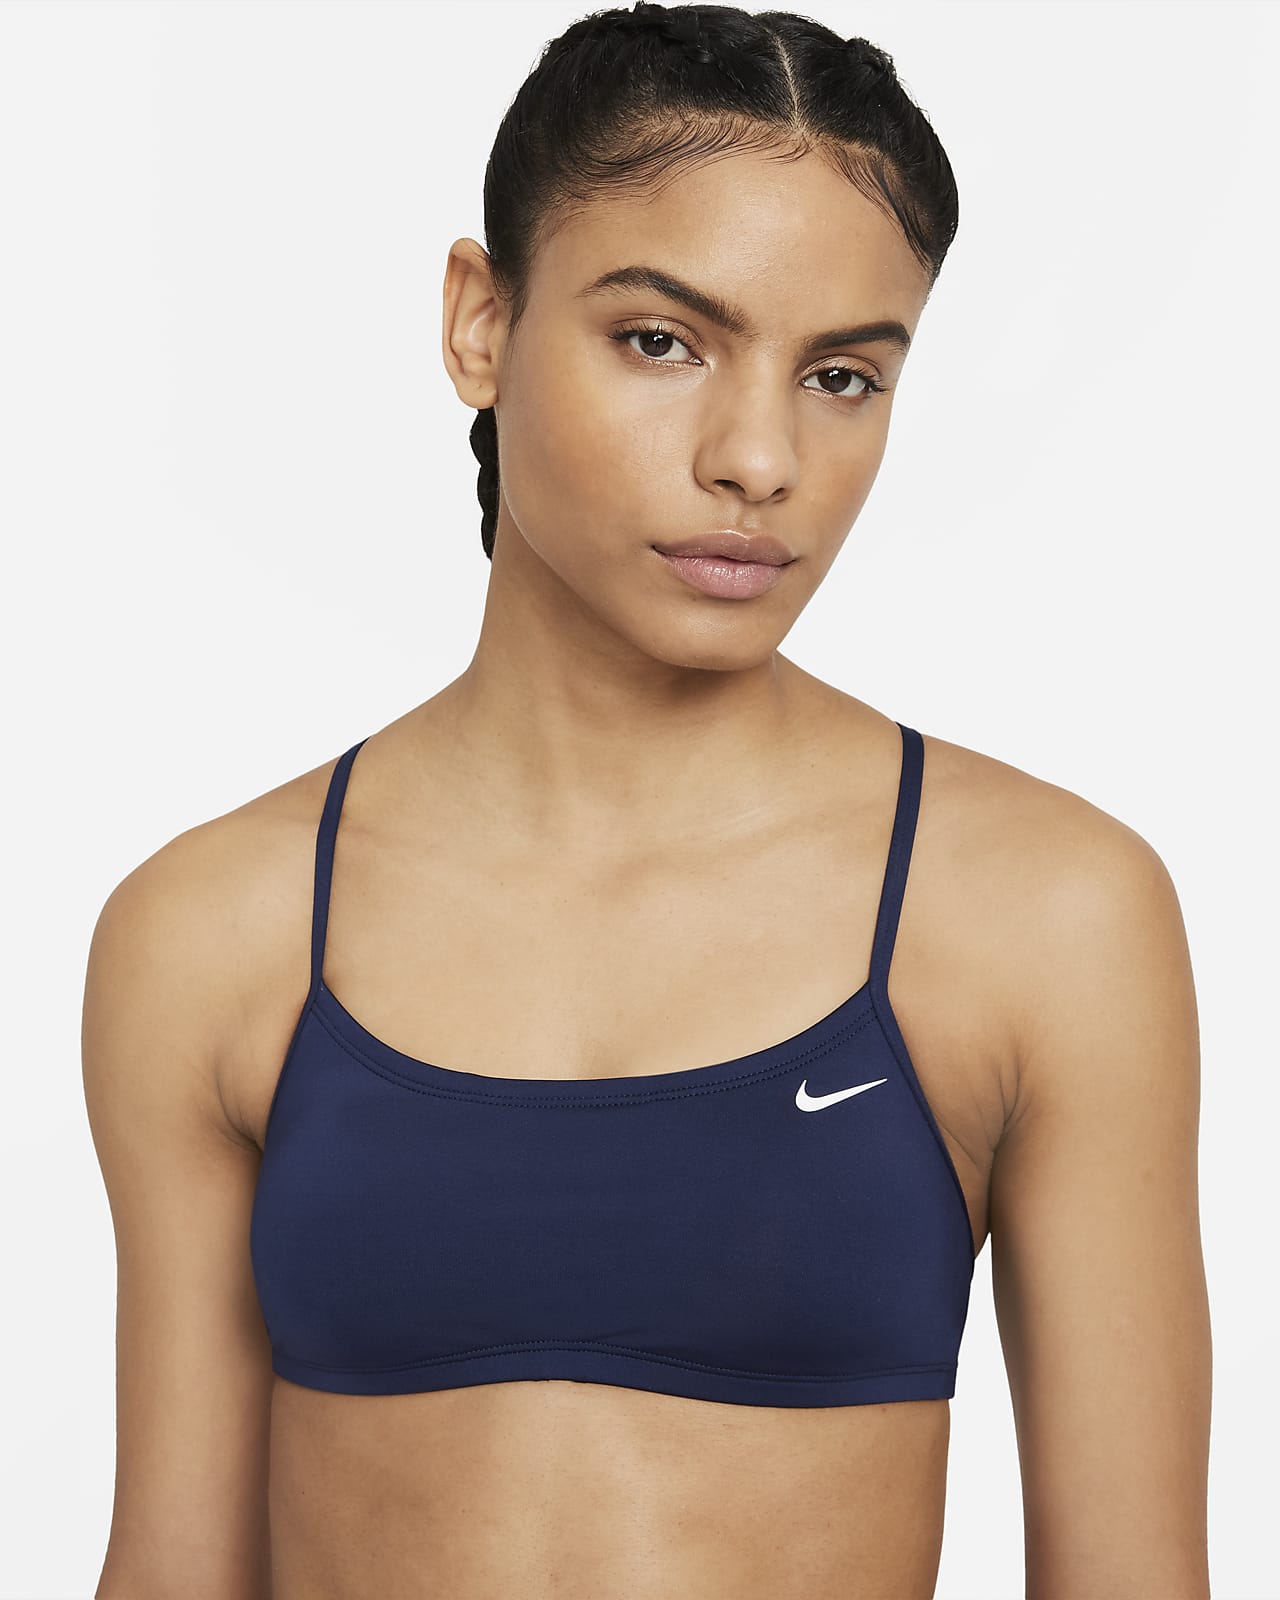 de espalda para mujer Essential. Nike.com